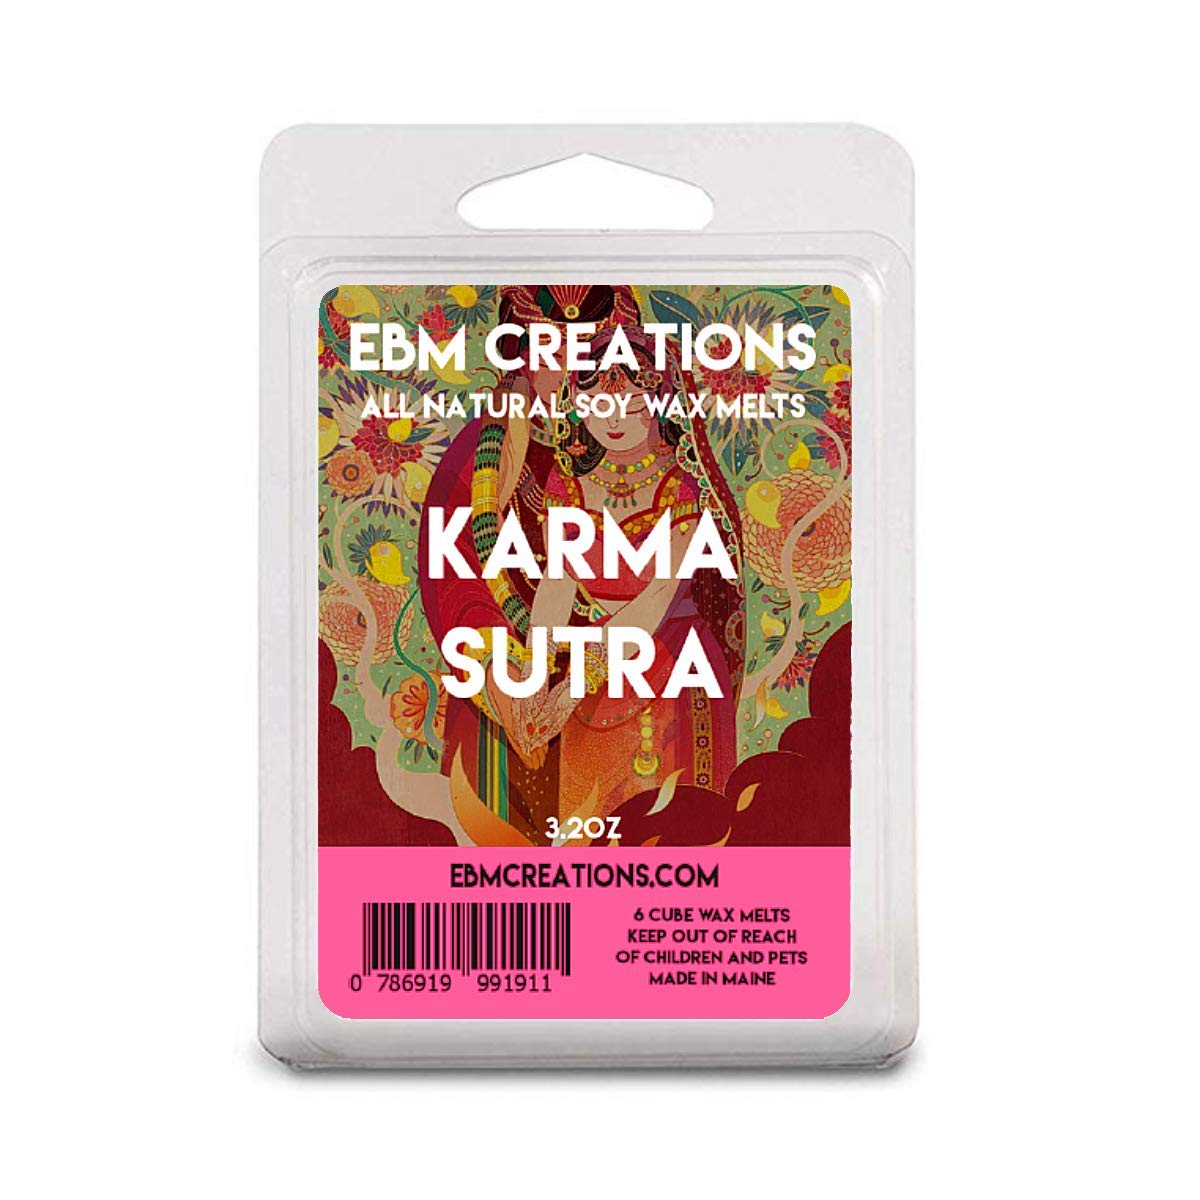 Karma Sutra - 3.2 oz Clamshell